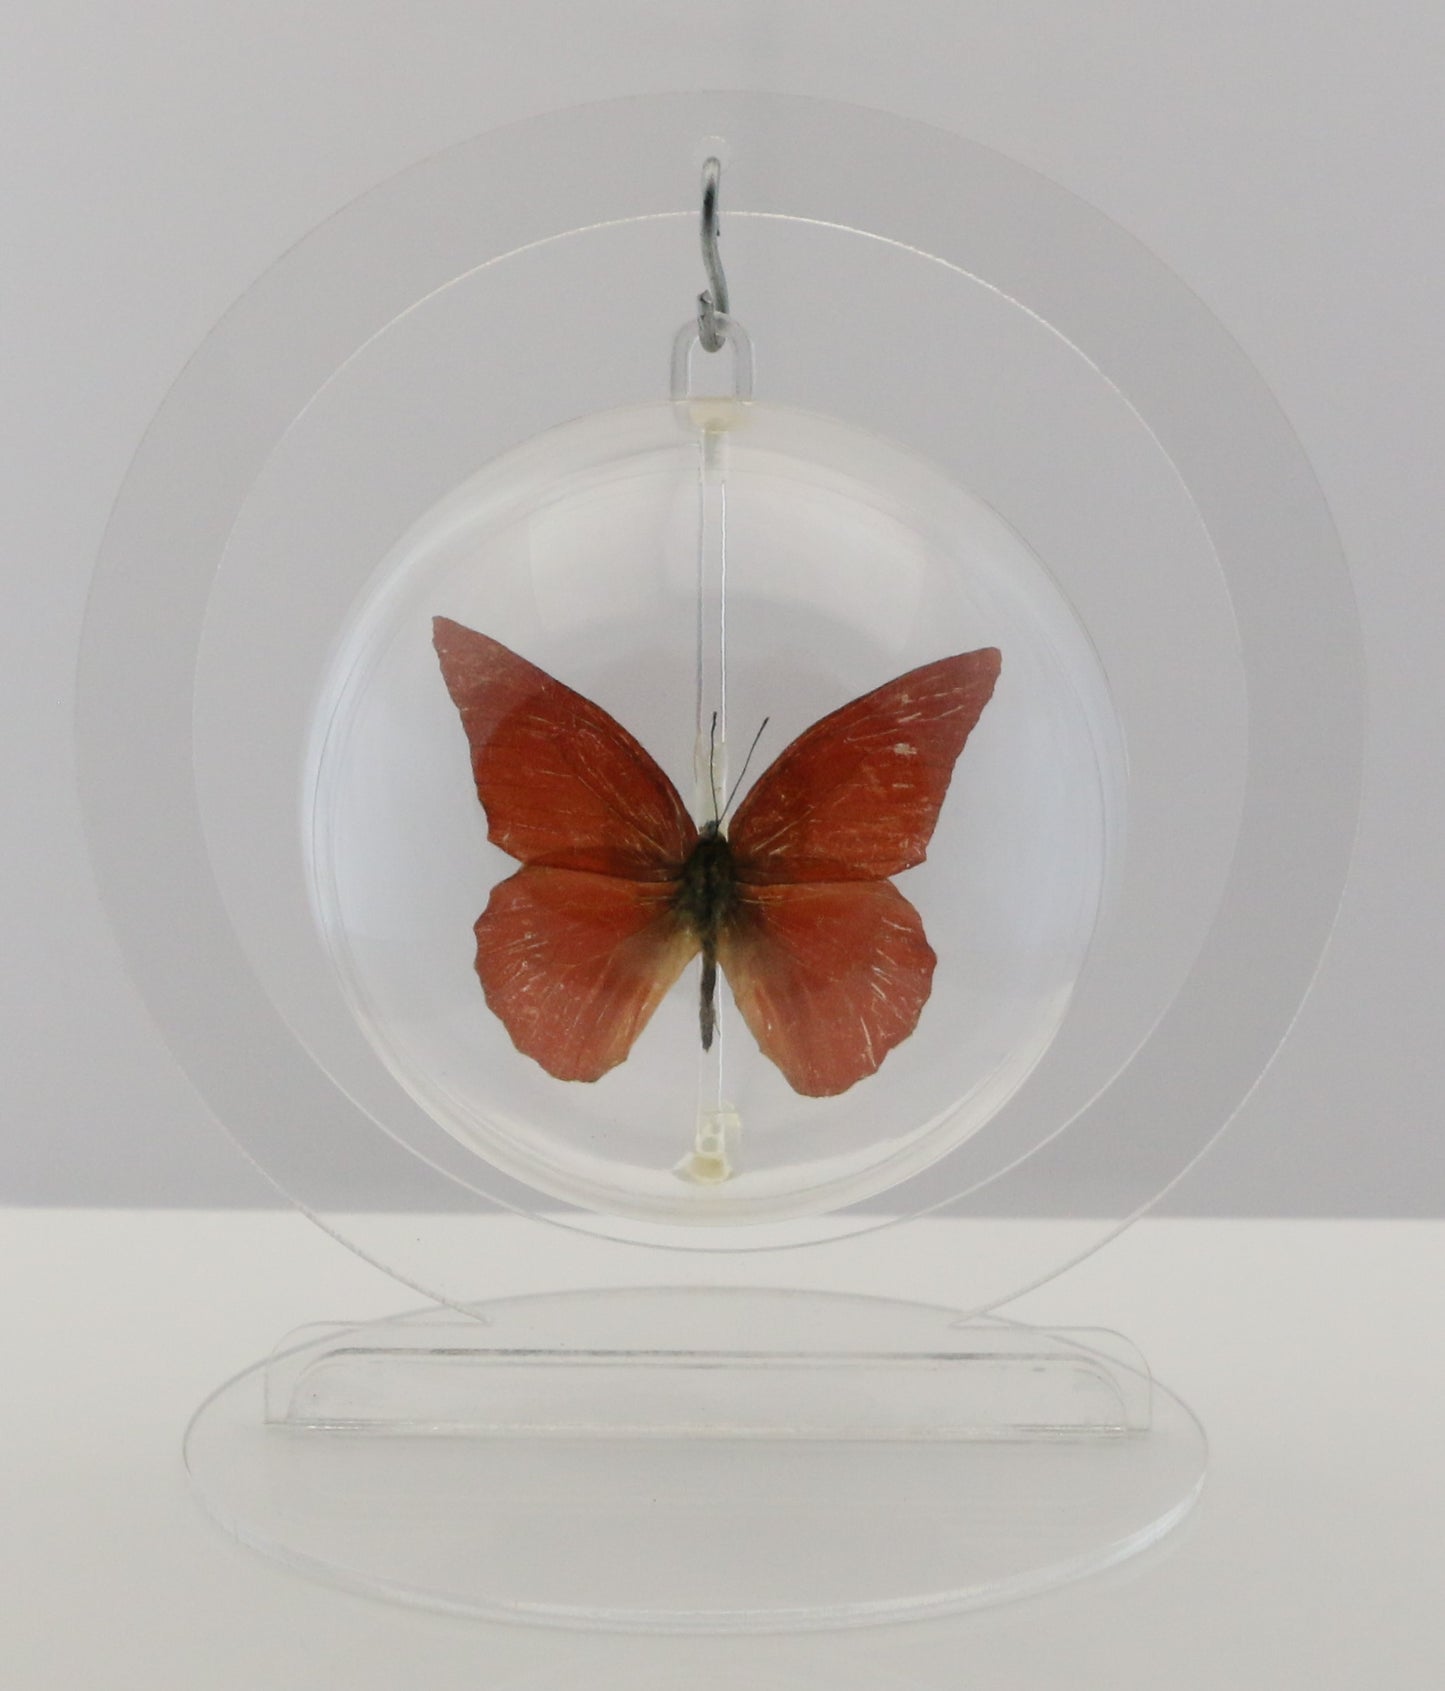 750202 - Butterfly Bubbles - Med. - Round - Orange Albatross Butterfly